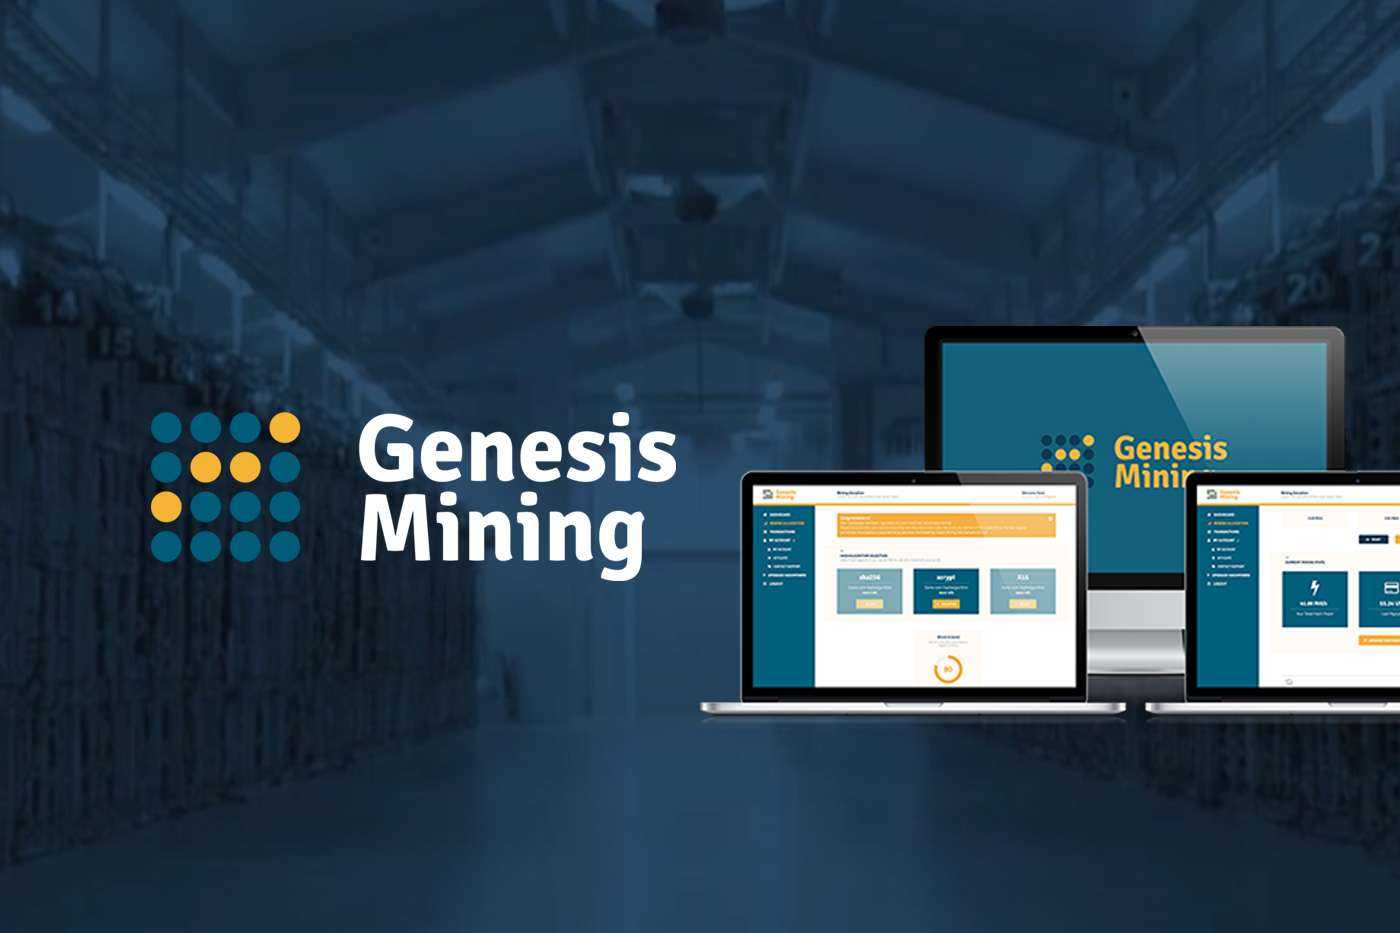 Genesis-Mining-hop-dong-tron-doi